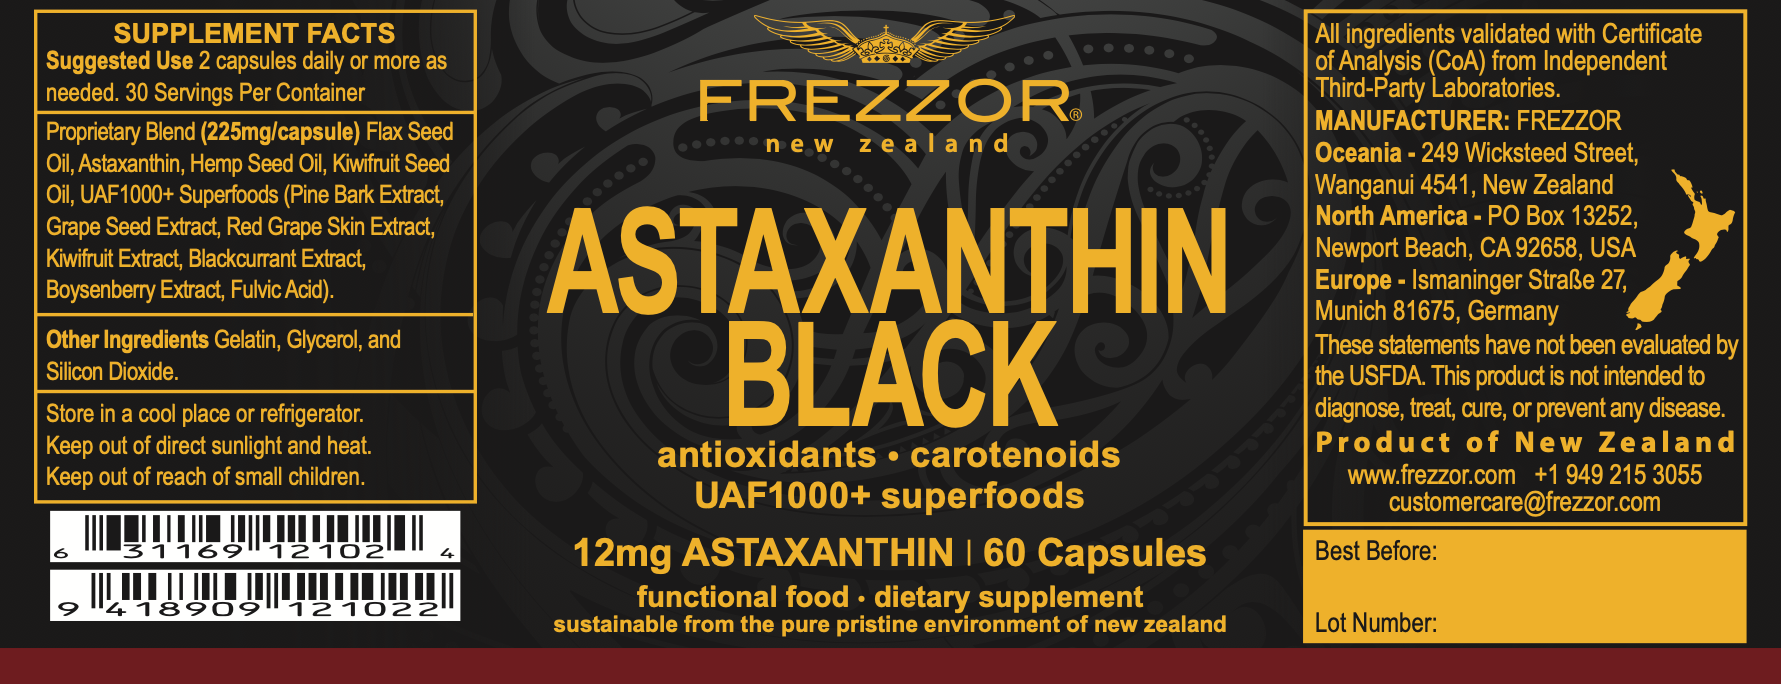 Astaxanthin Black Label